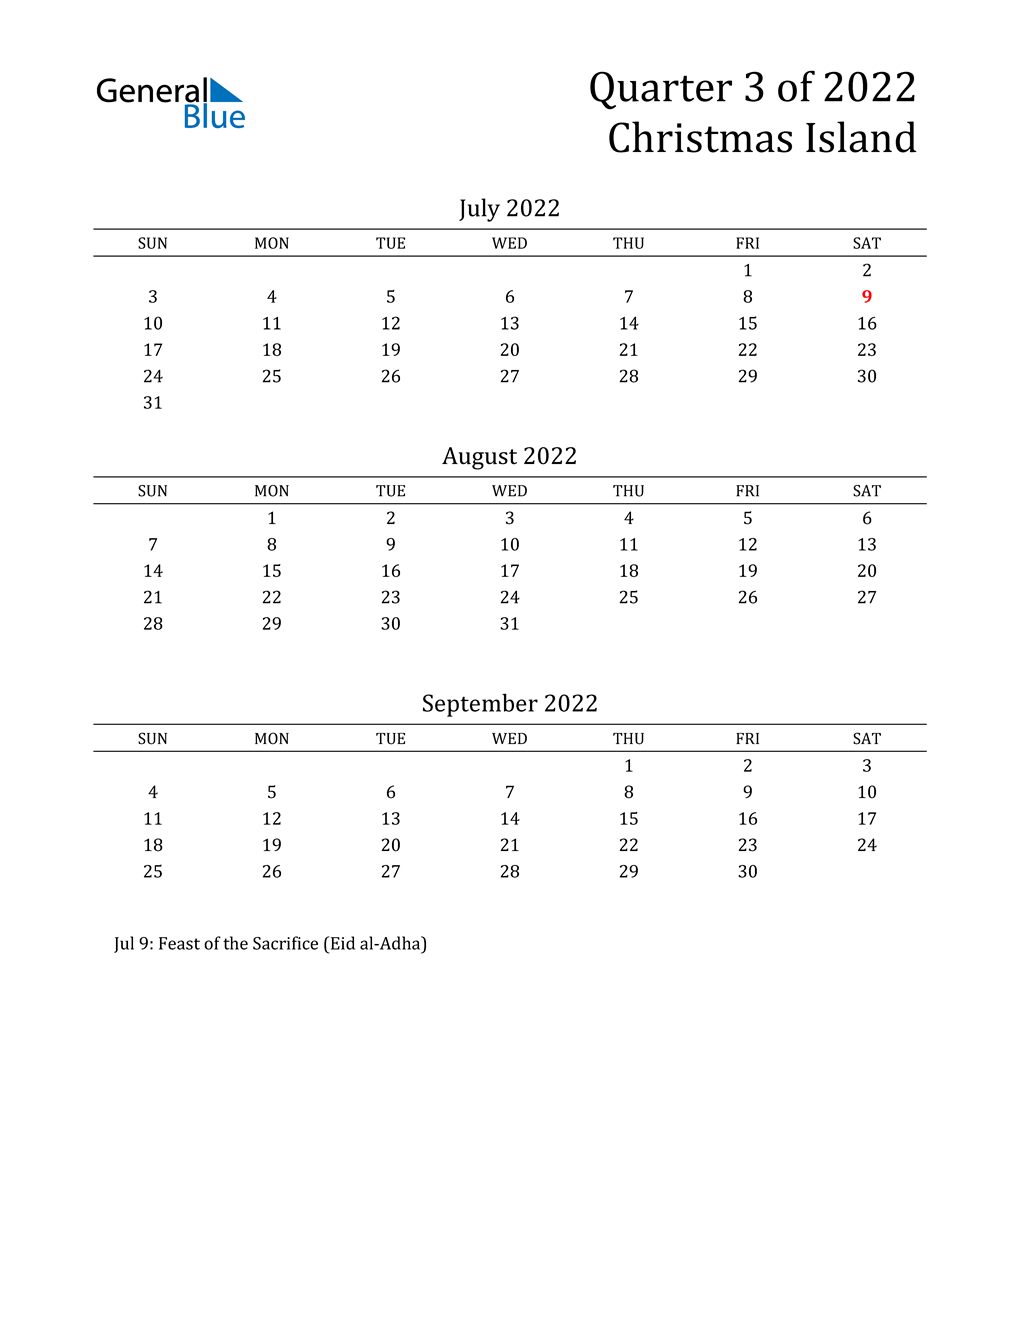  2022 Christmas Island Quarterly Calendar